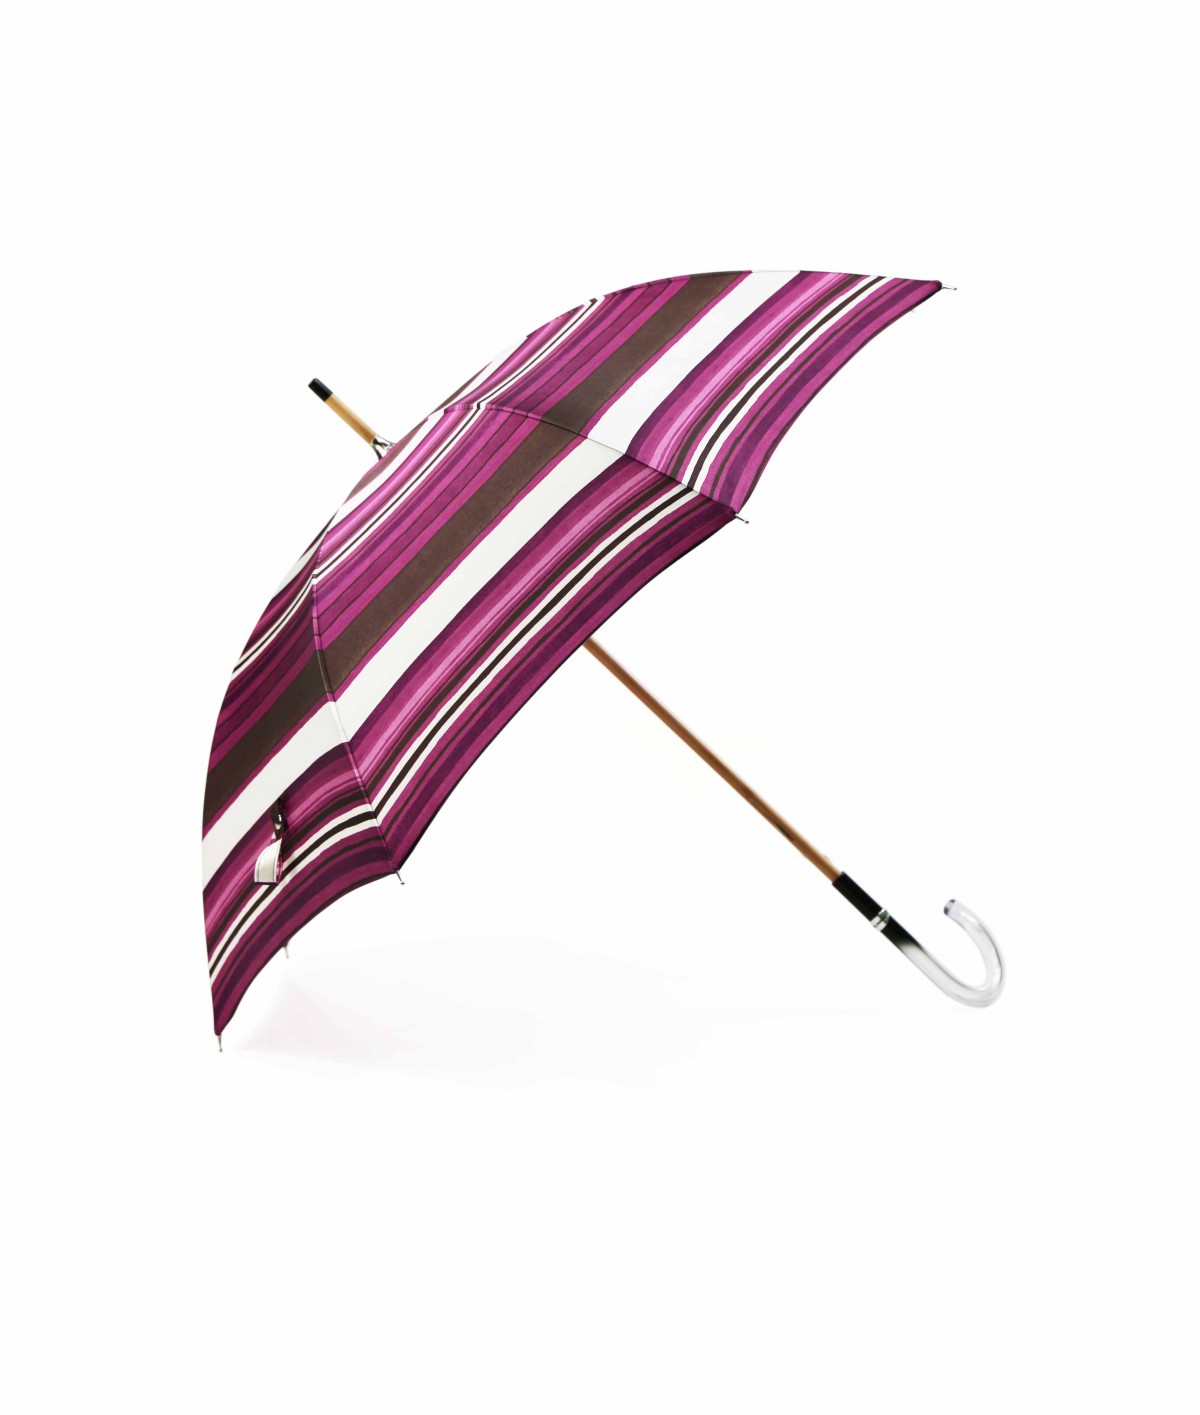 → Parapluie Satin Imprimé Fantaisie - Long Manuel N°17 - Made in France par Maison Pierre Vaux Fabricant Français de Parapluie